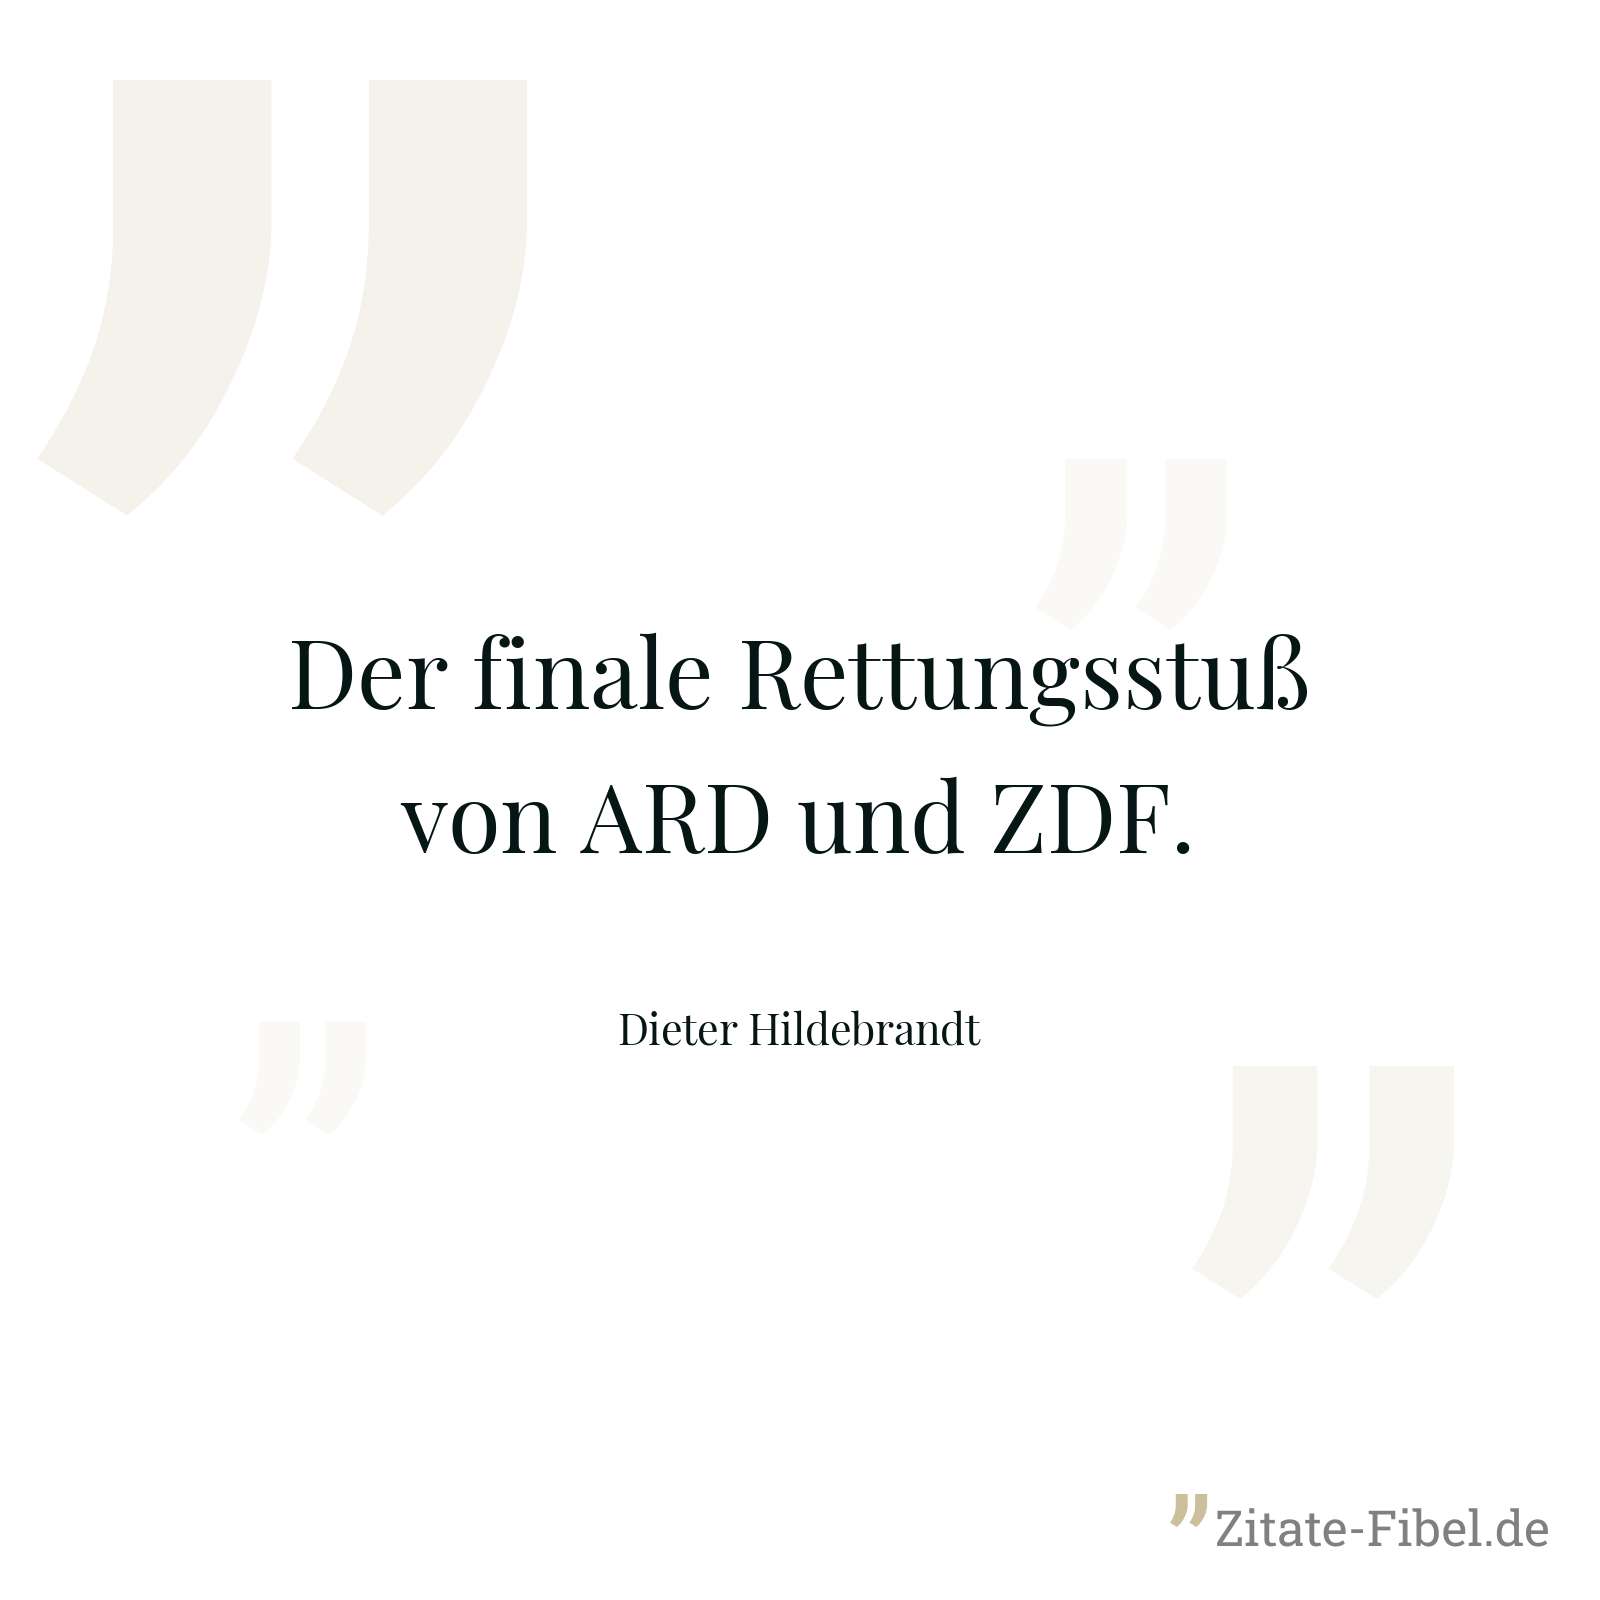 Der finale Rettungsstuß von ARD und ZDF. - Dieter Hildebrandt